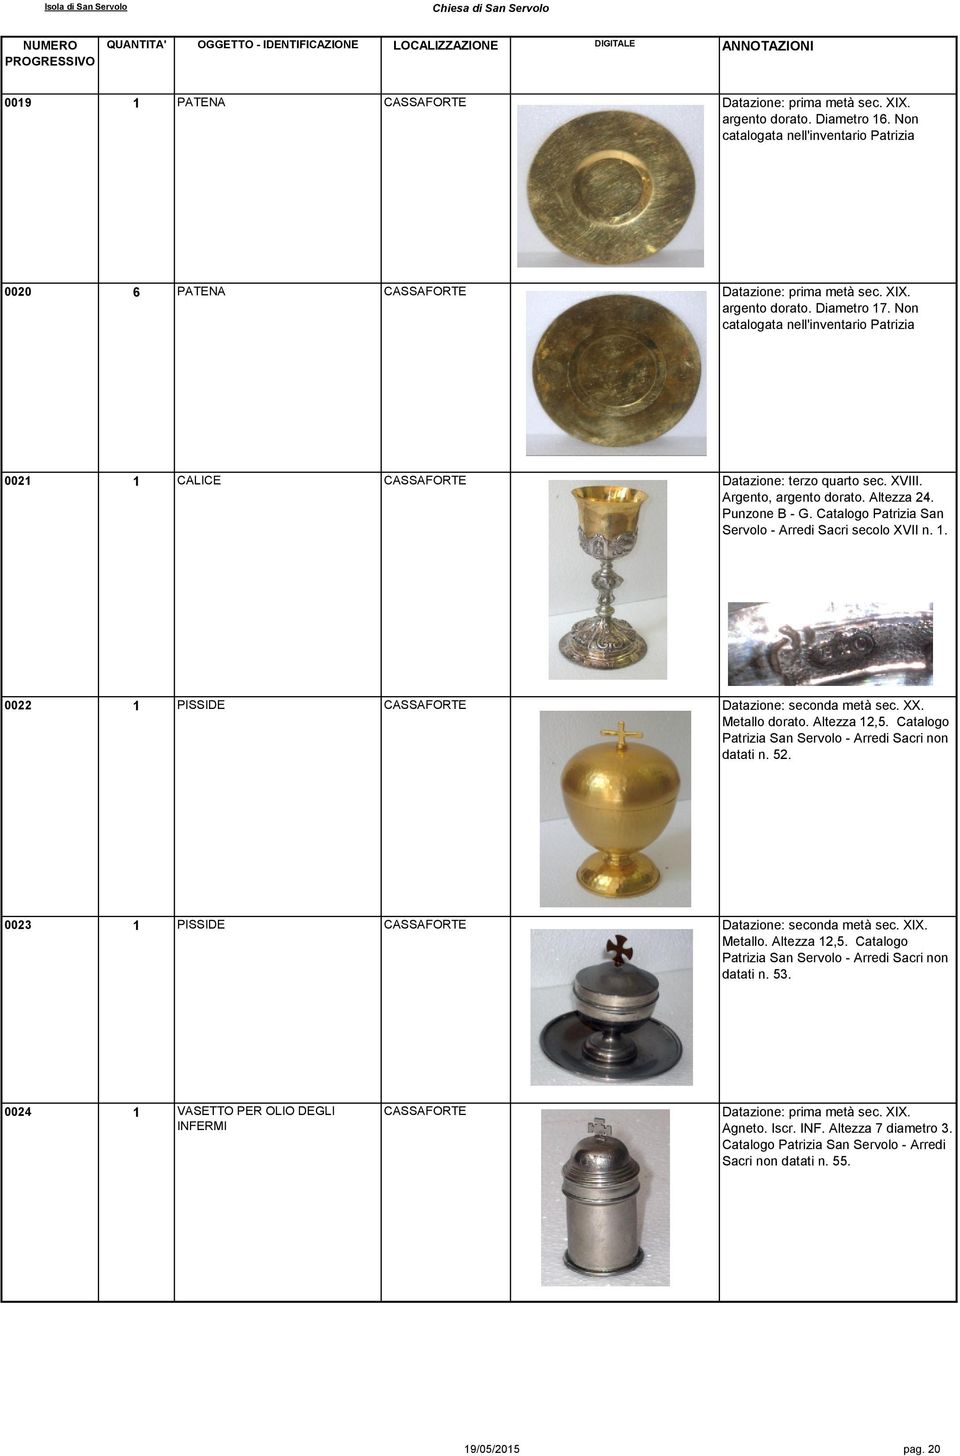 Catalogo Patrizia San Servolo - Arredi Sacri secolo XVII n. 1. 0022 1 PISSIDE CASSAFORTE Datazione: seconda metà sec. XX. Metallo dorato. Altezza 12,5.